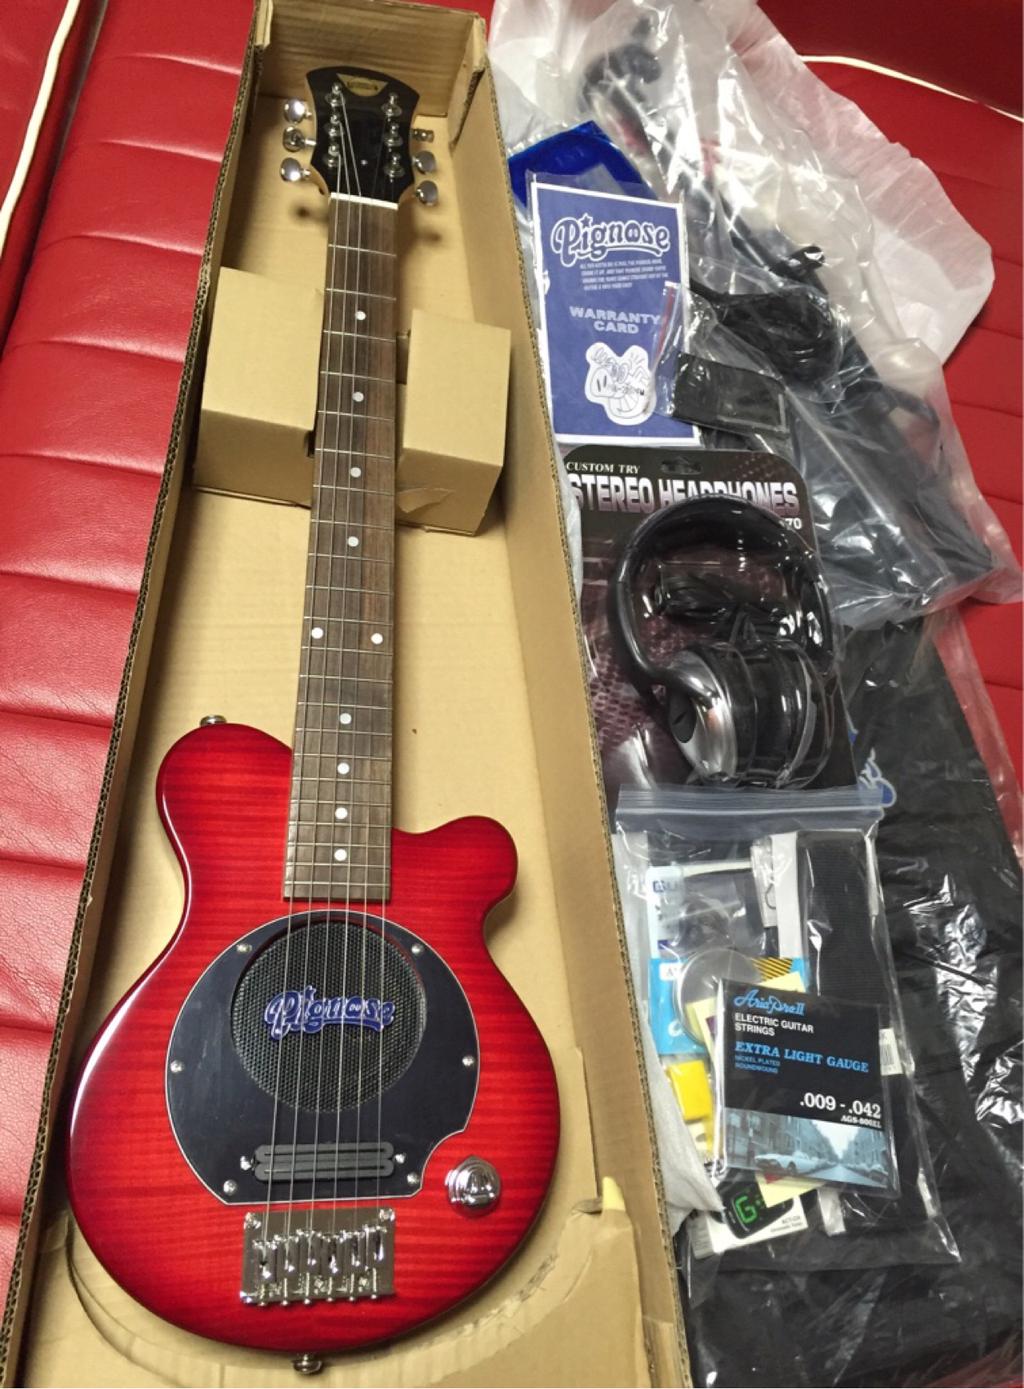 ヅ] ミニギター Pignose PGG-200FM SR を購入 (2015-02-25)